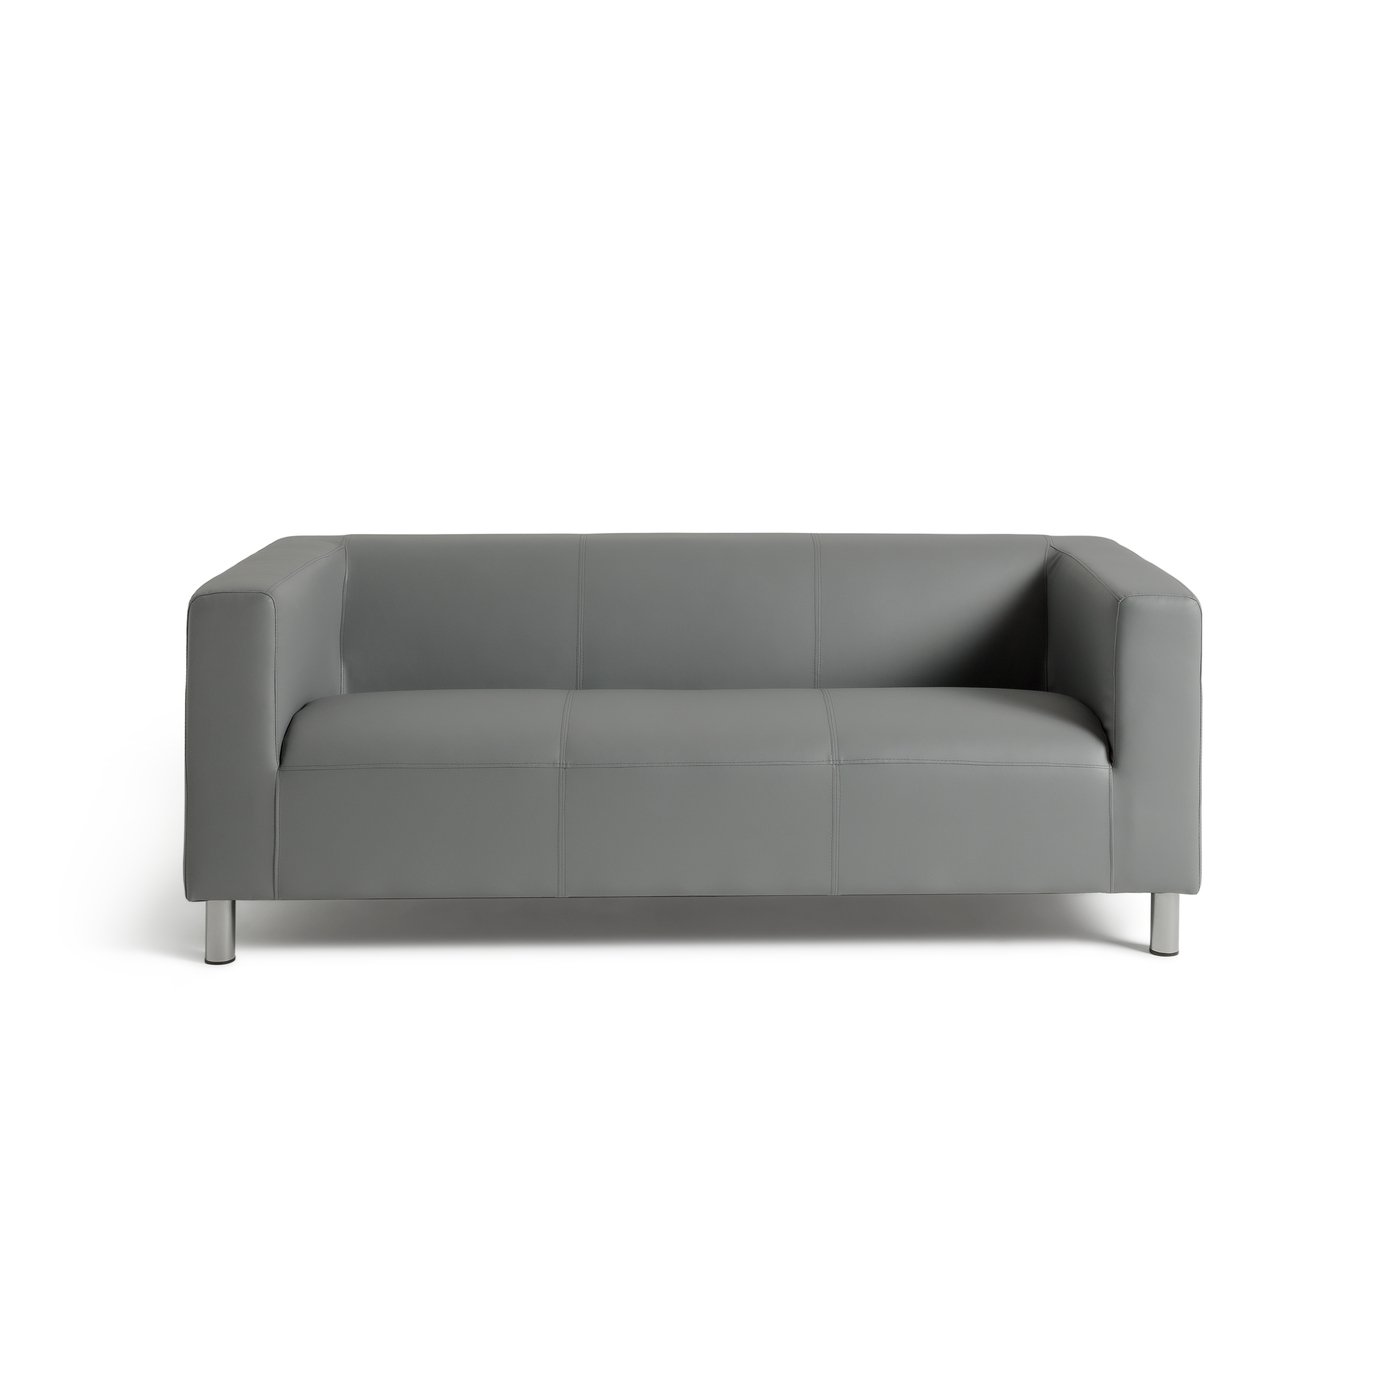 Argos Home Moda 3 Seater Faux Leather Sofa - Grey